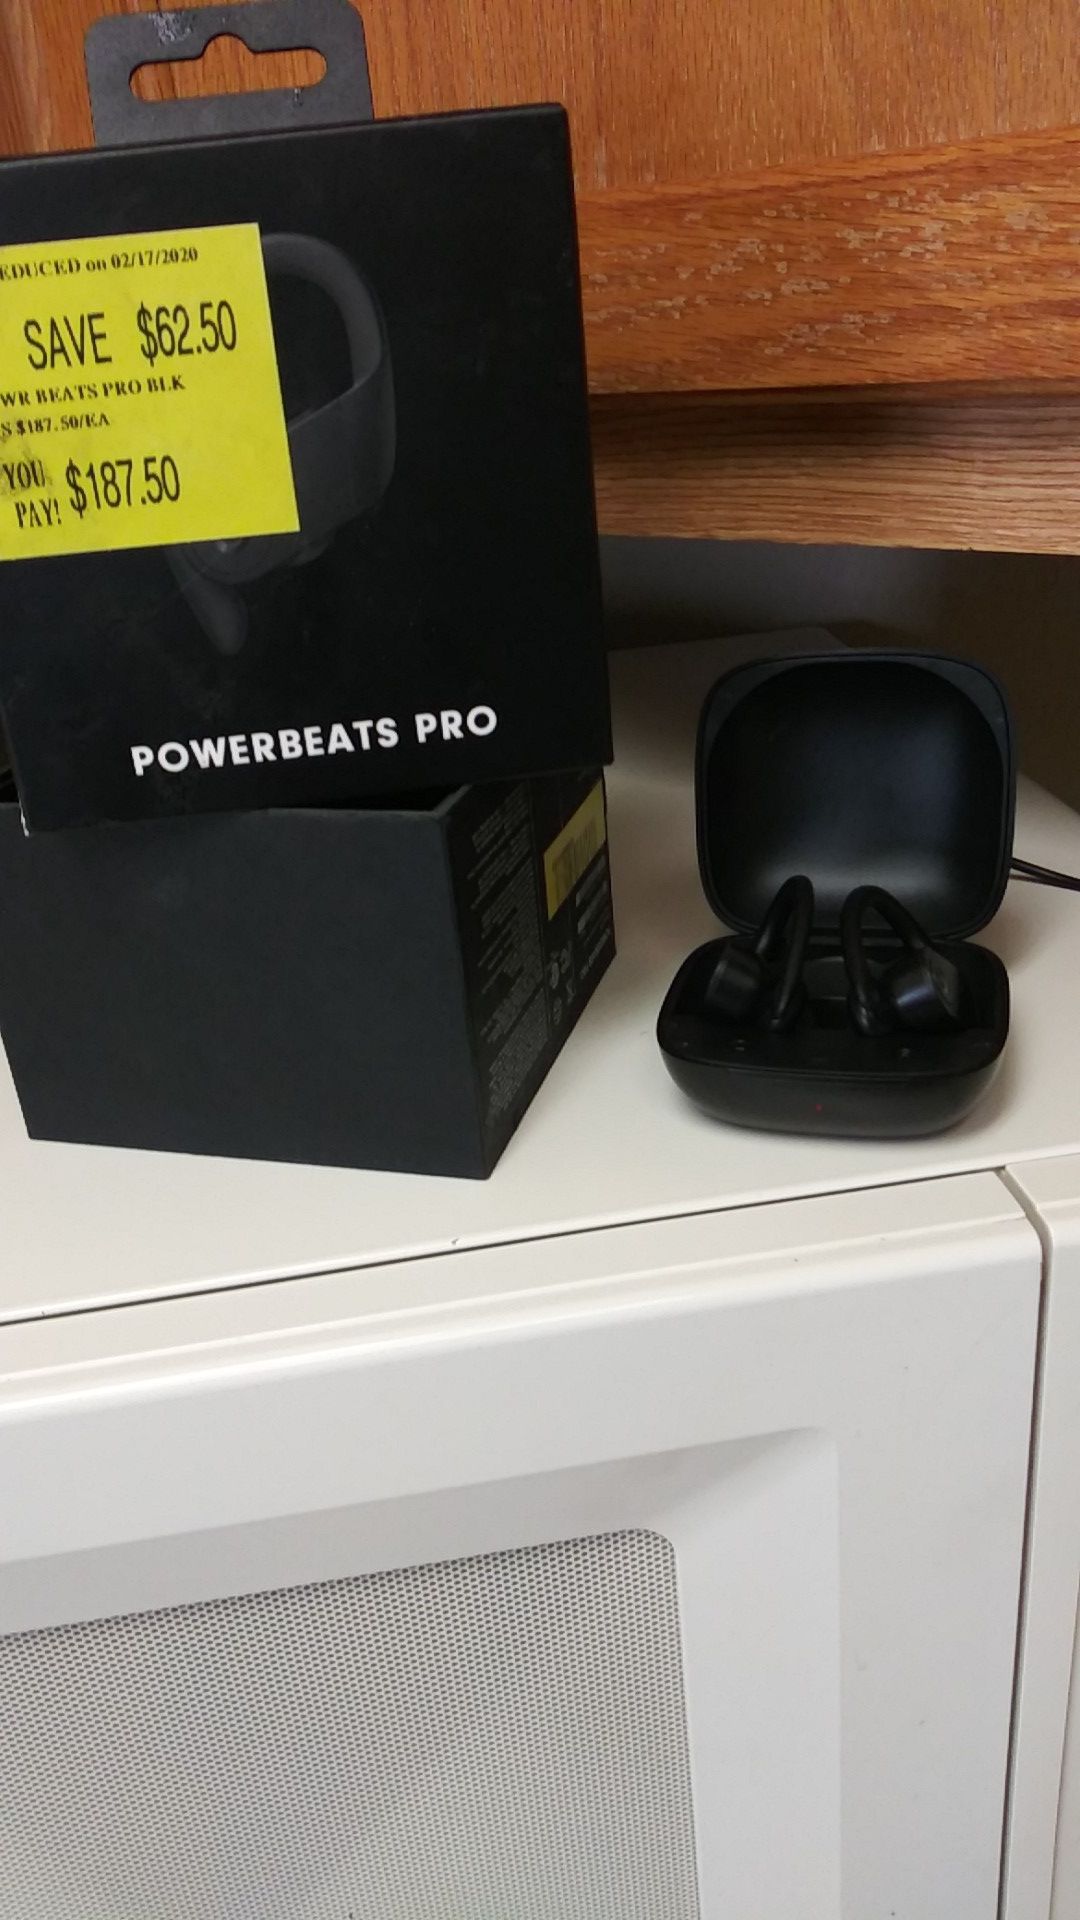 Powerbeats Pro by dre